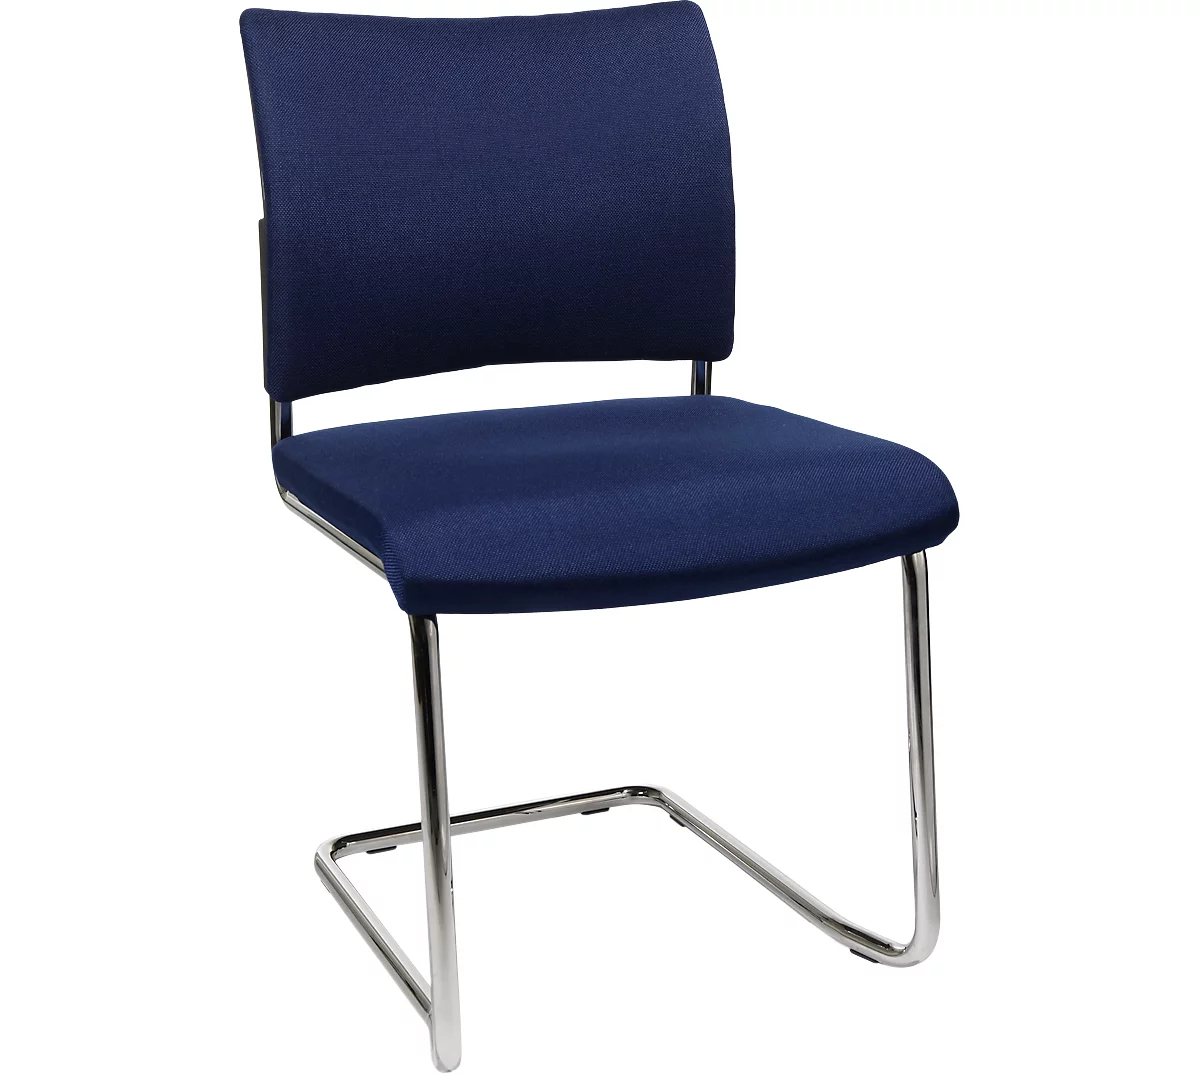 Silla cantilever SEAT POINT, acolchado, sin reposabrazos, apilable, juego de 2, azul